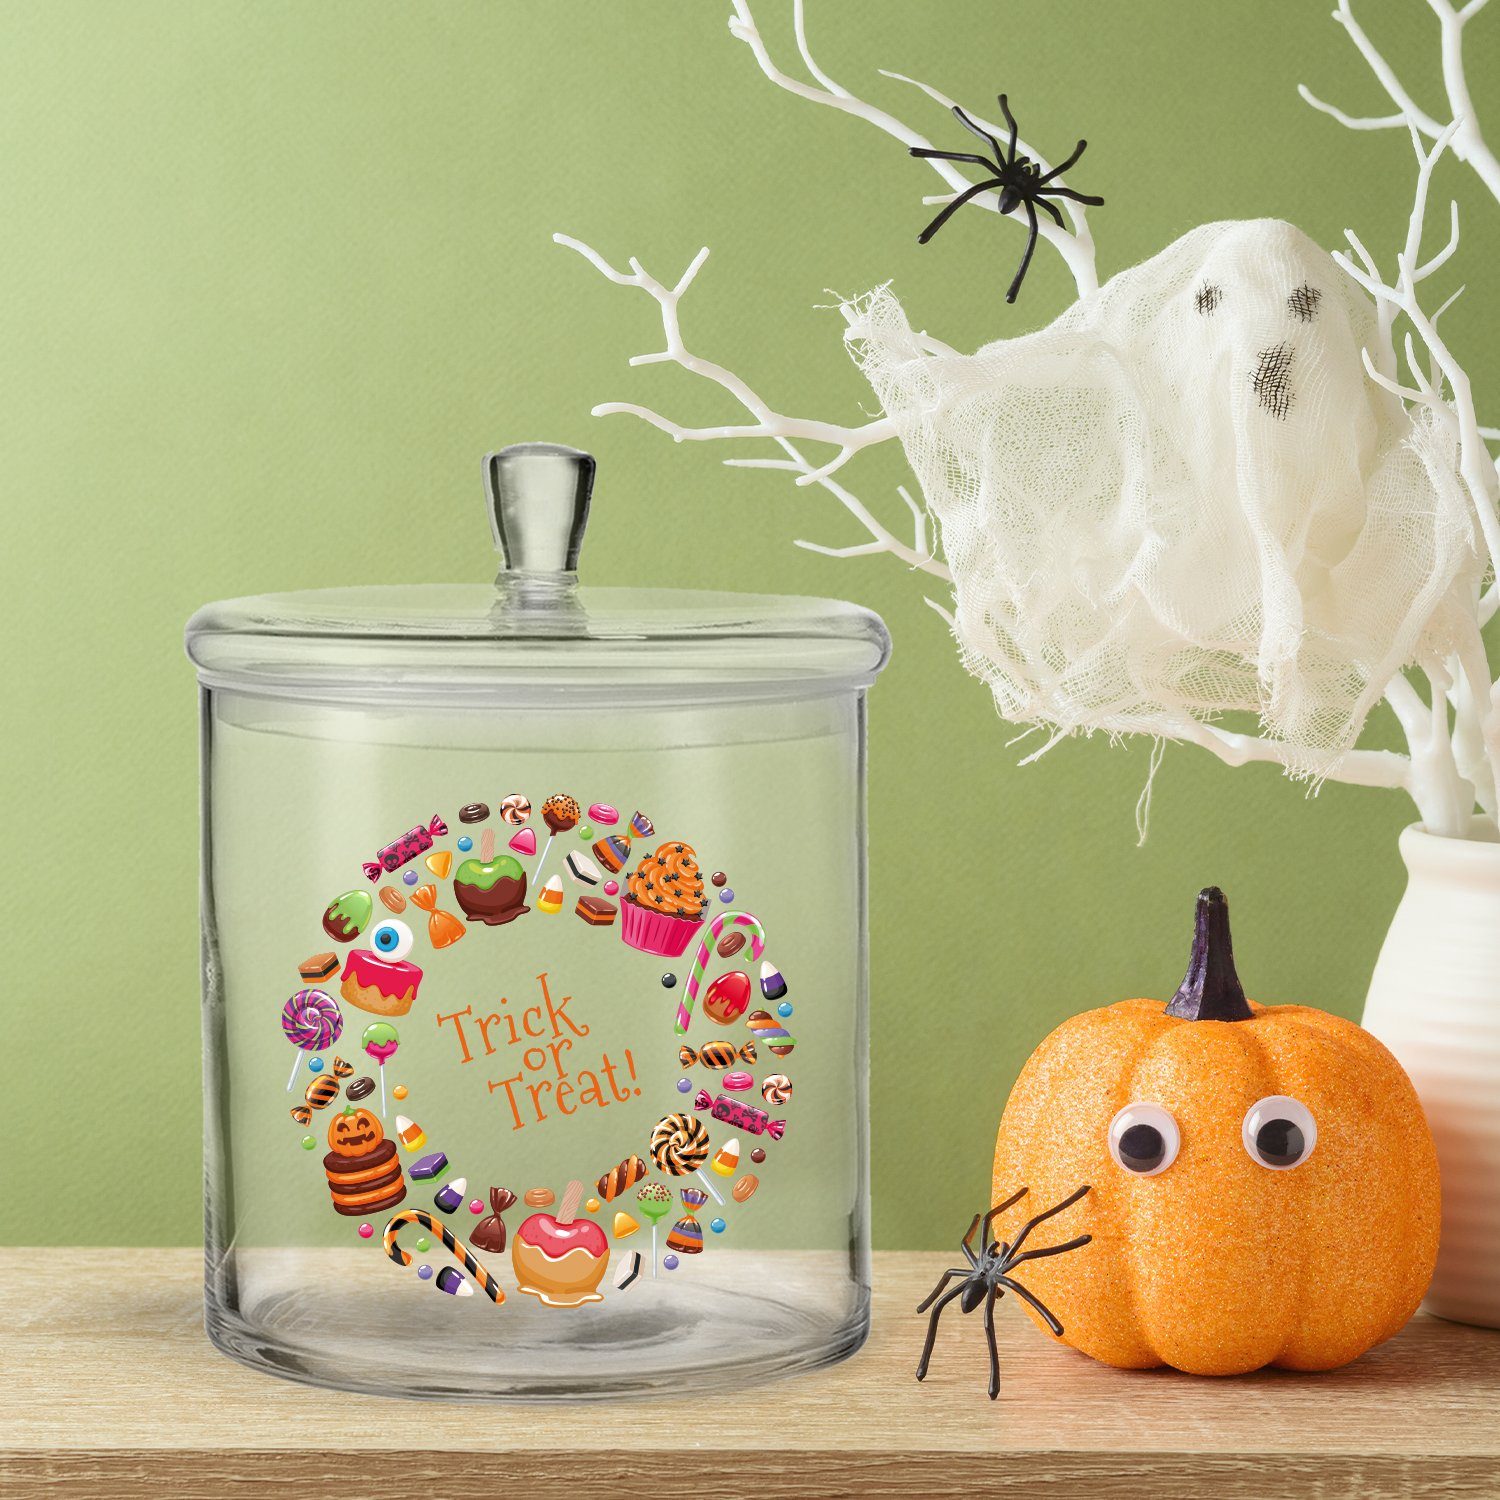 GRAVURZEILE Keksdose im UV-Druck or Trick Set) (Kein Candy Halloween Design, Treat Glas